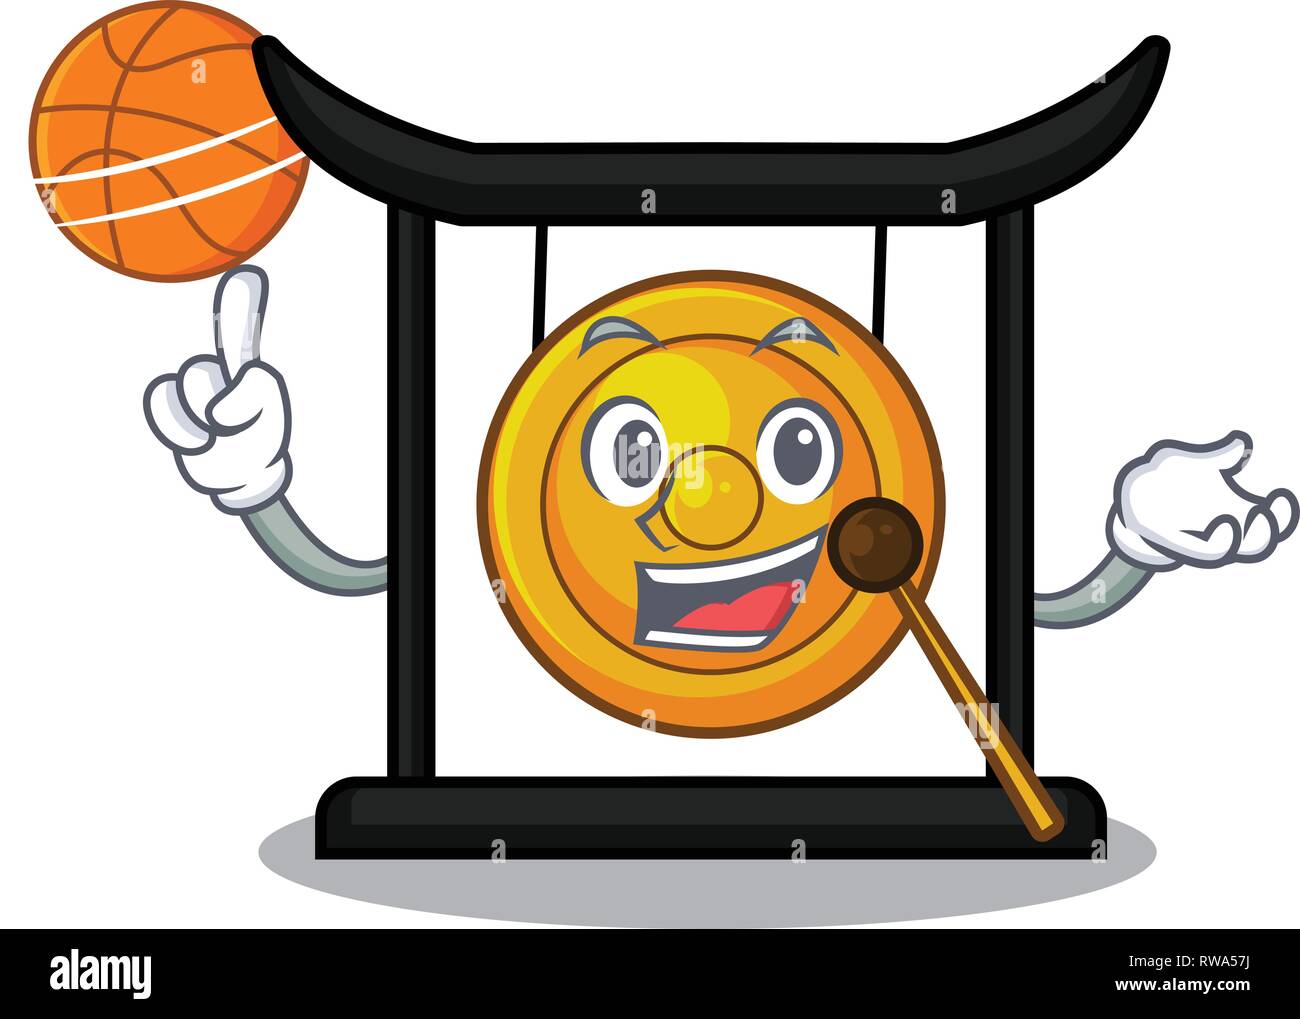 Con basket goldeng gong nella forma dei caratteri Illustrazione Vettoriale